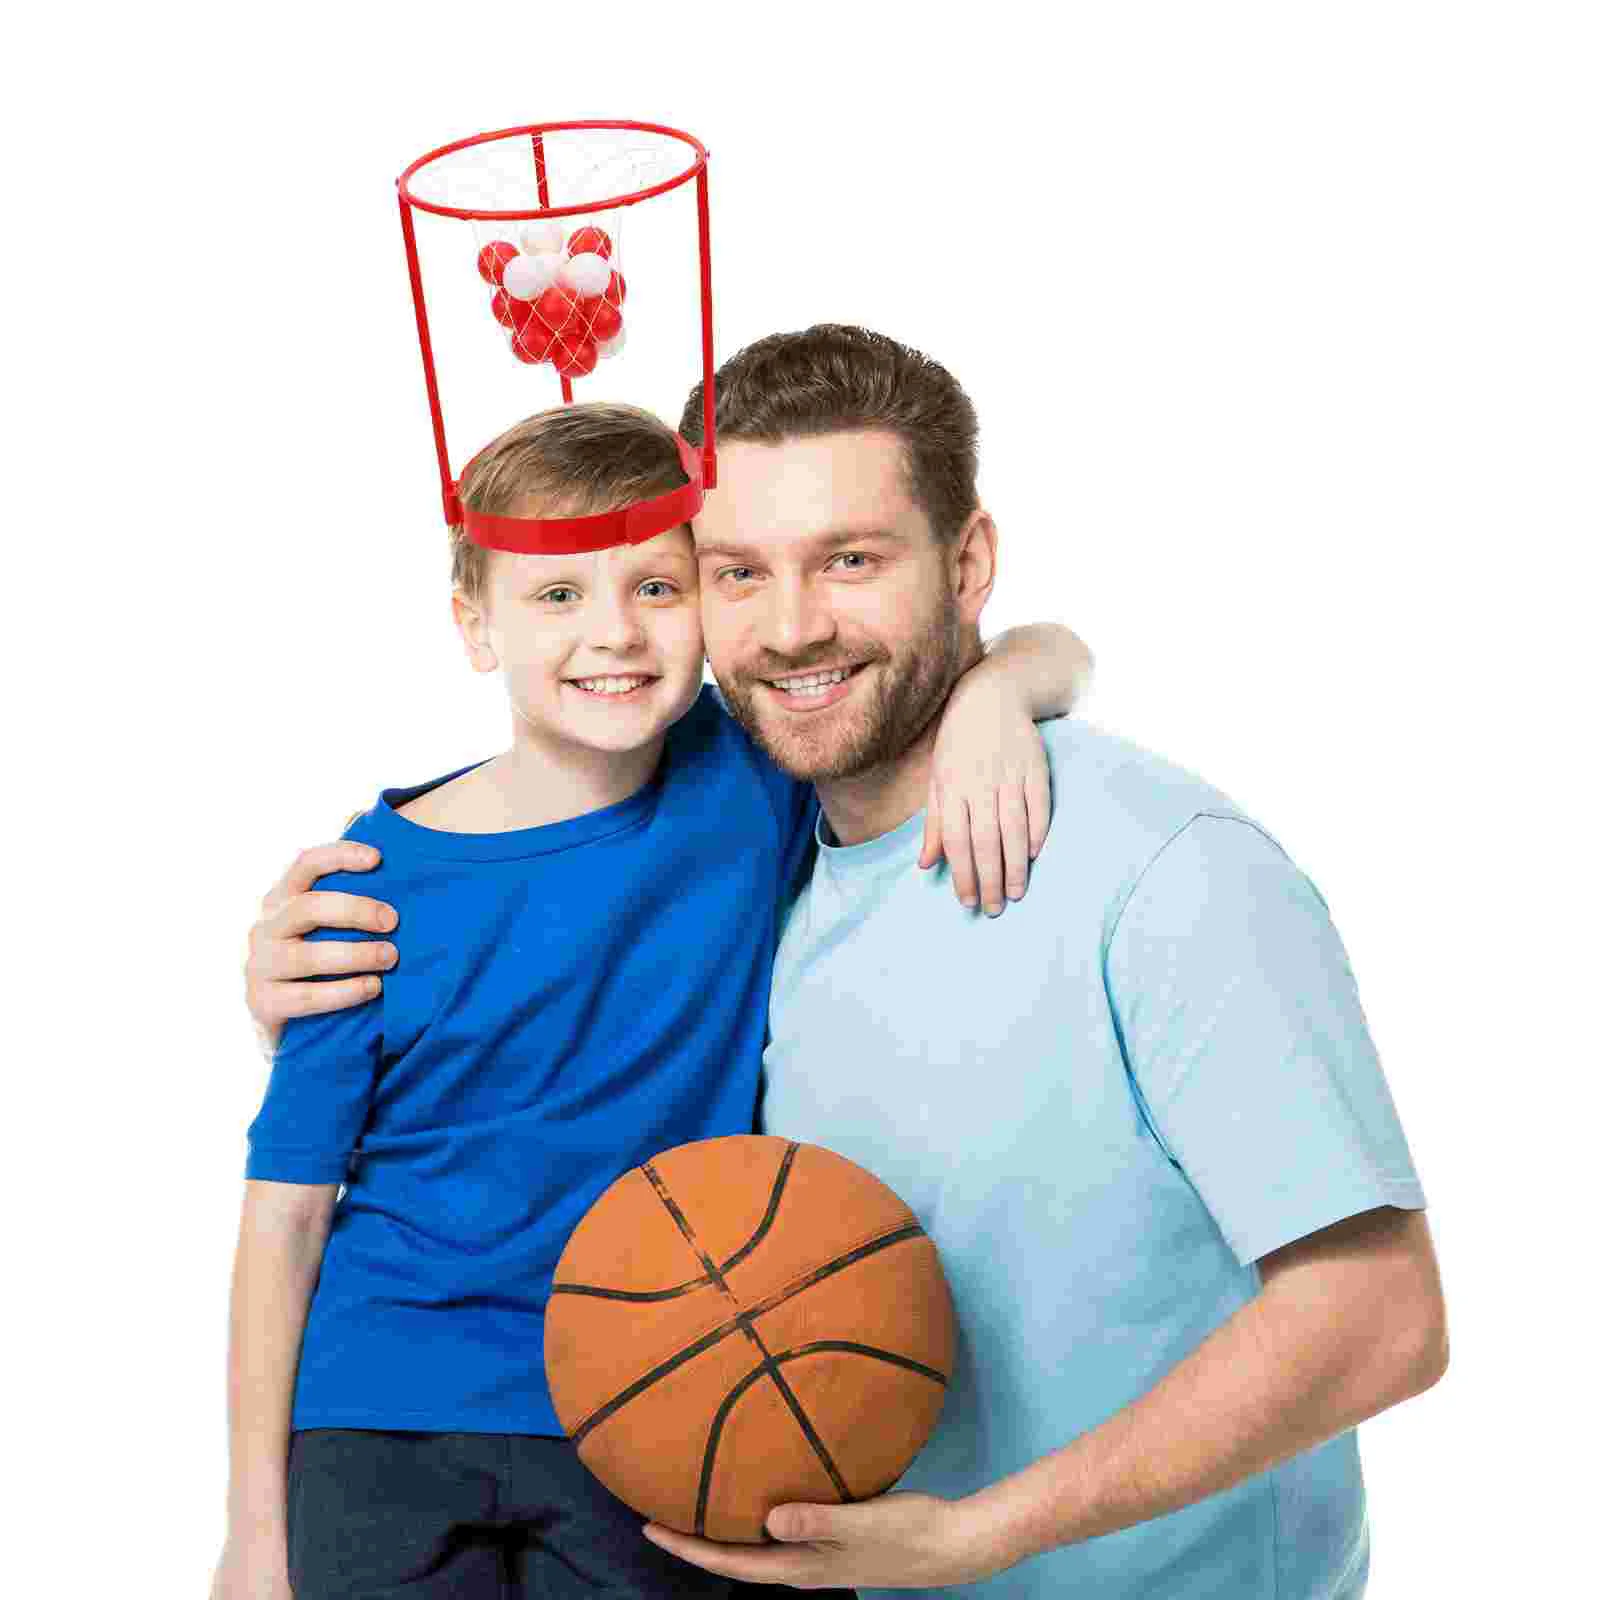 

1 комплект мячей, игрушка для бросания, баскетбольная повязка на голову, игровые принадлежности для семьи